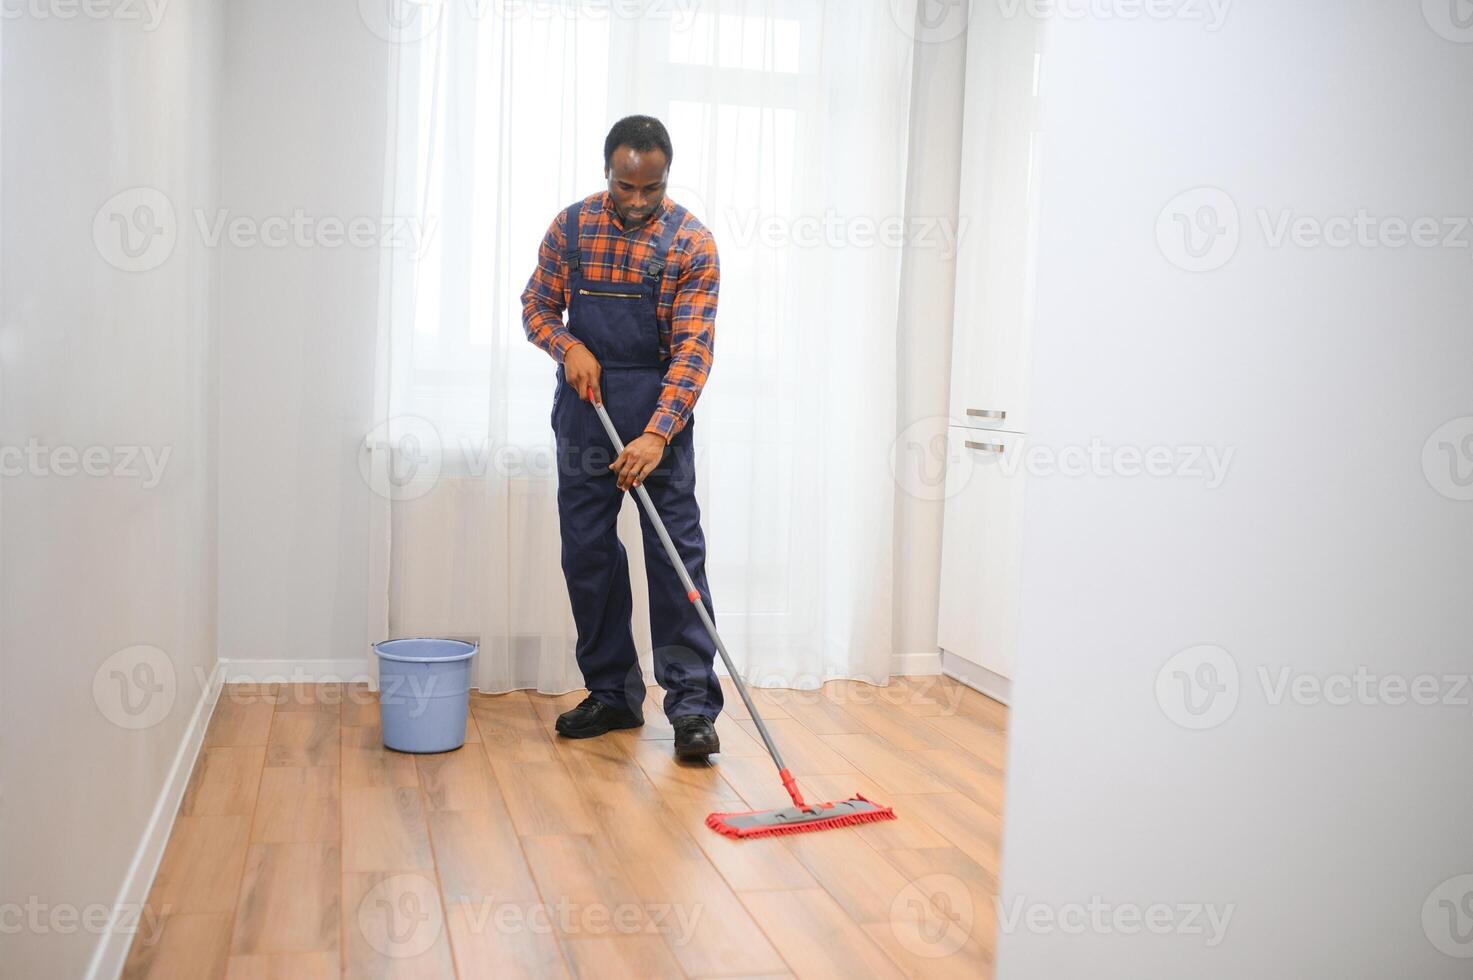 joven africano hombre lavados el piso con un fregona en el habitación foto